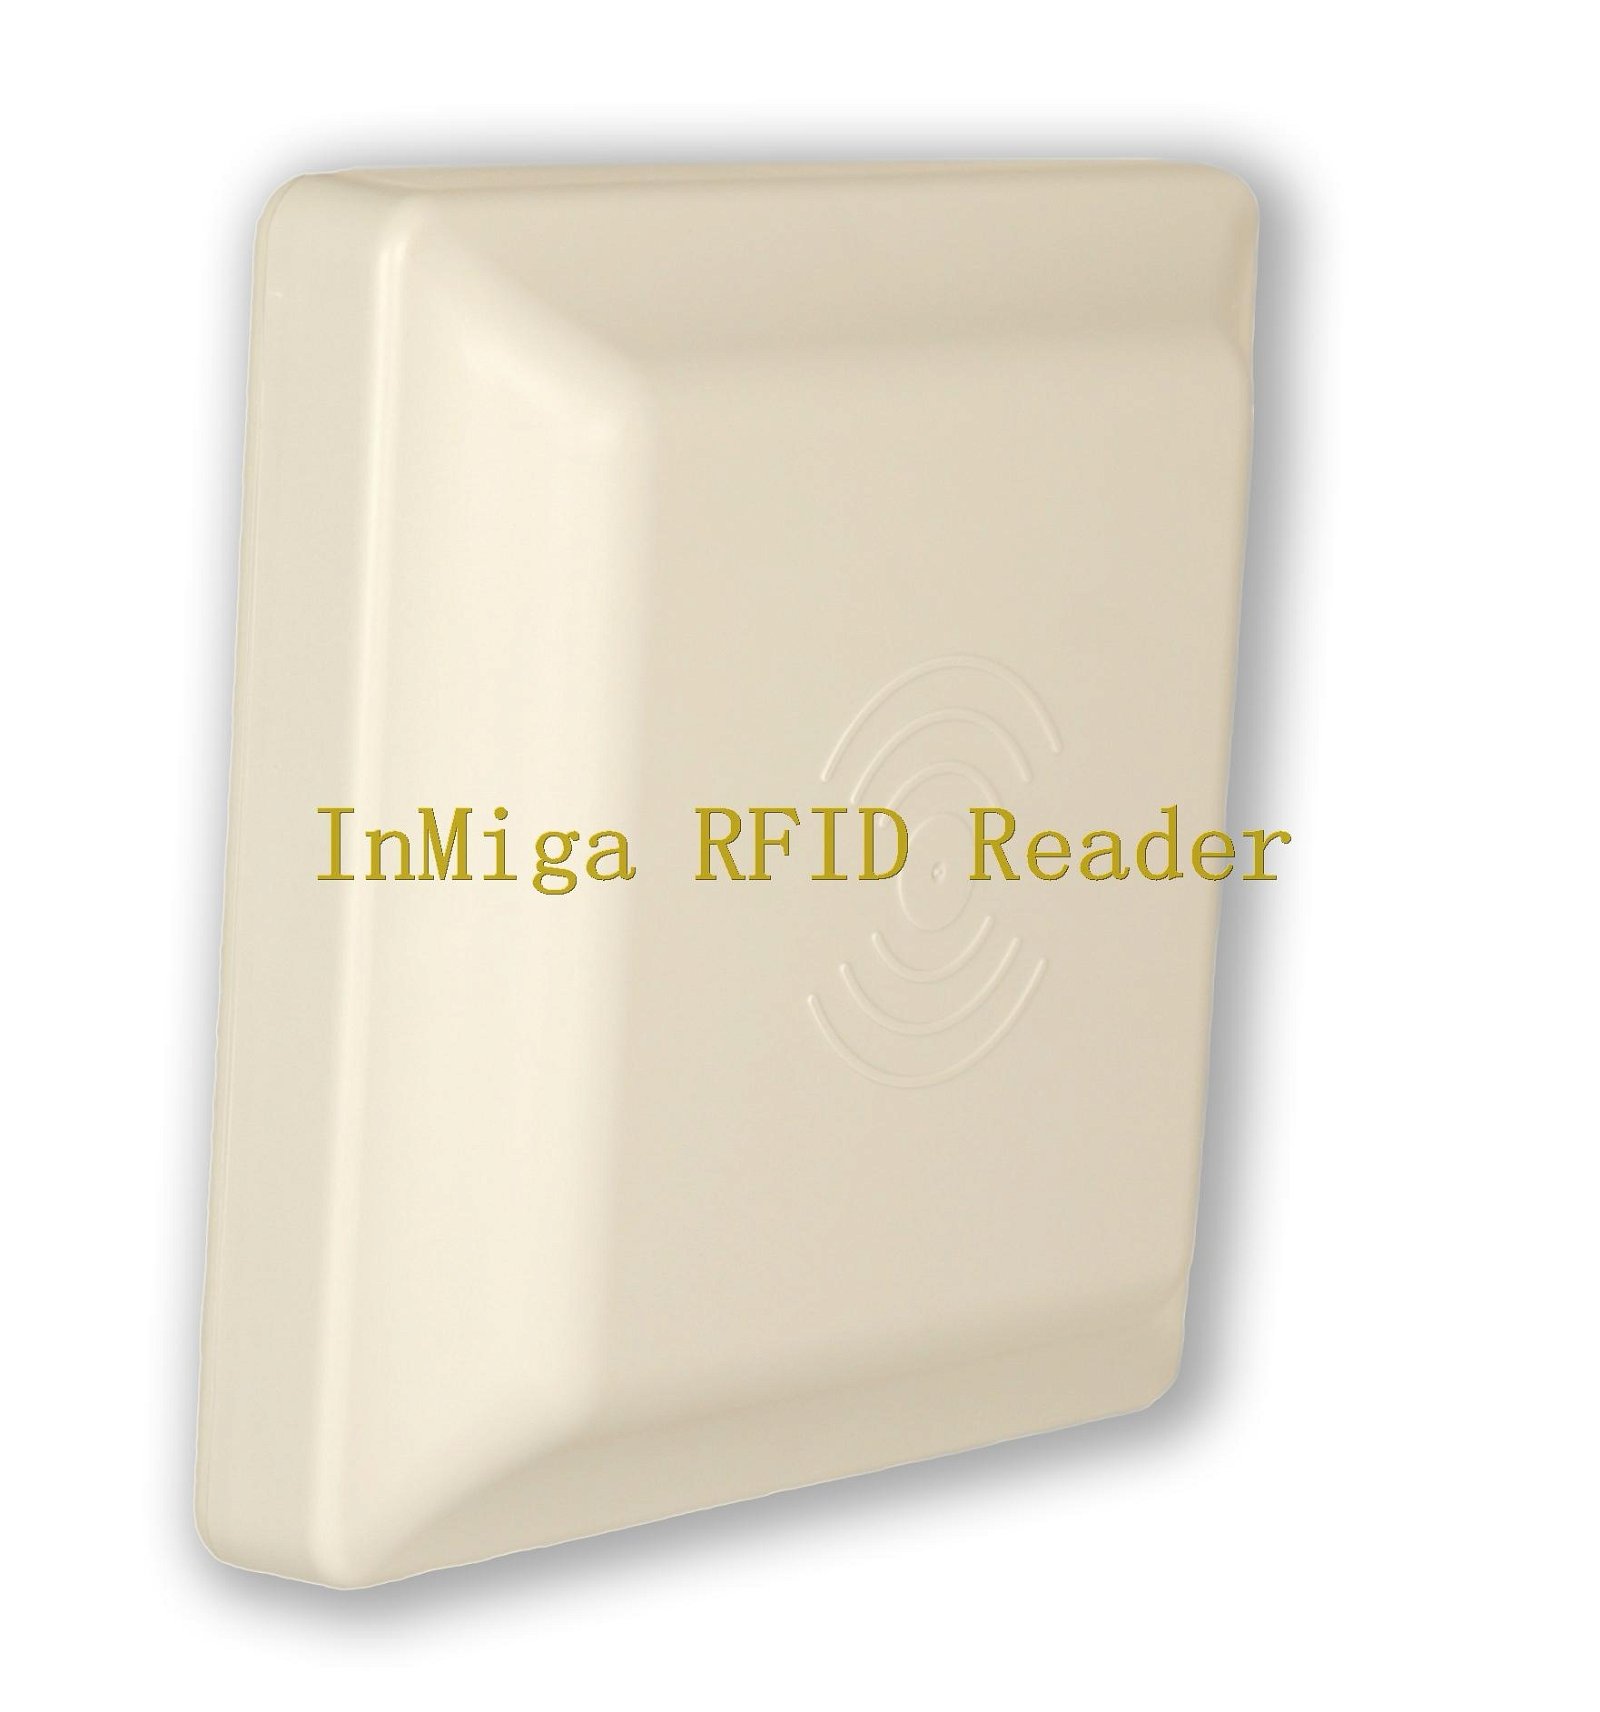 UHF fixed reader 5